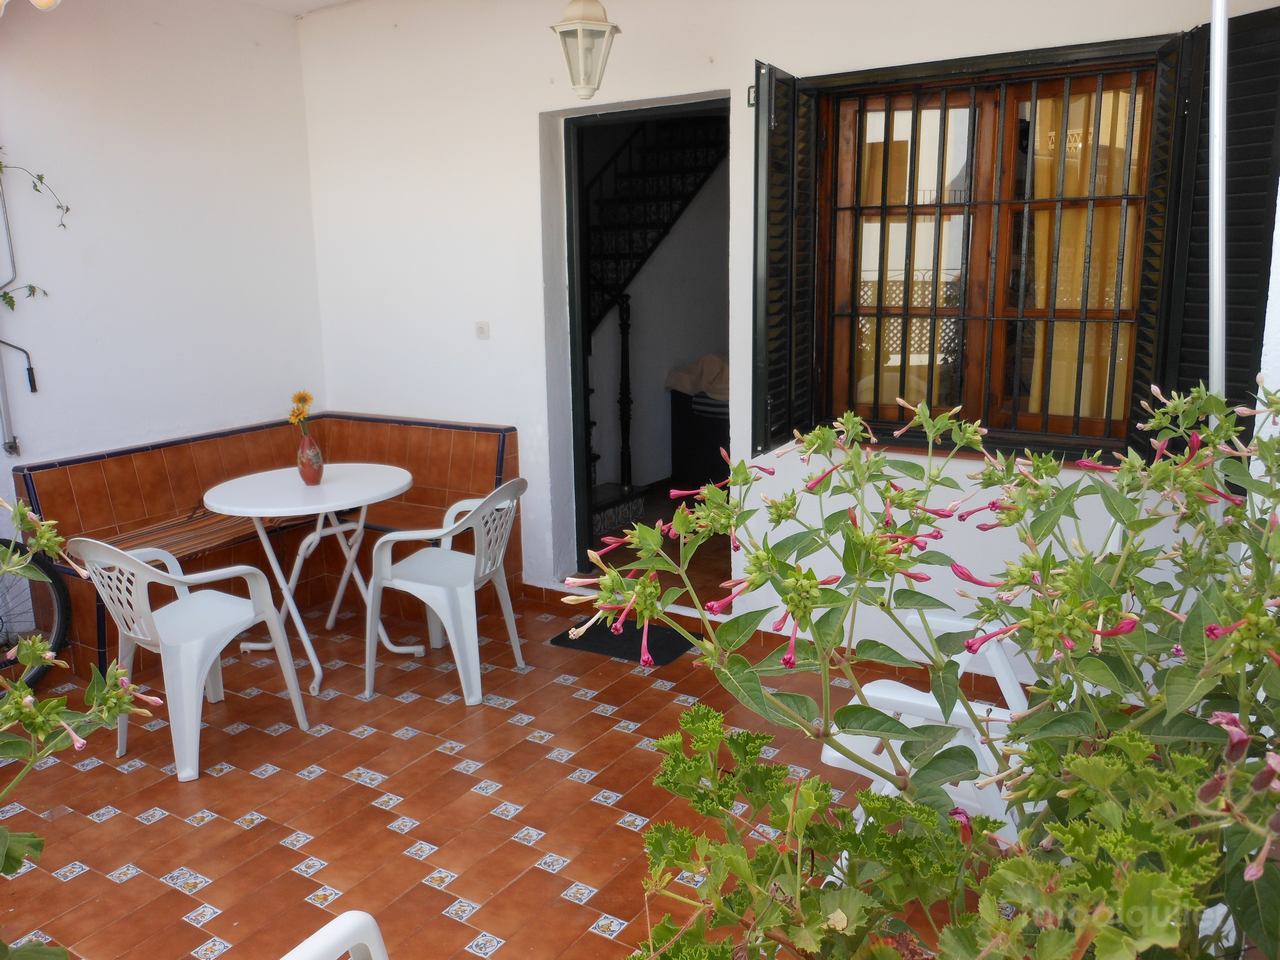 Alquiler de chalet adosado tres dormitorios en Islantilla, Urbasur, Huelva